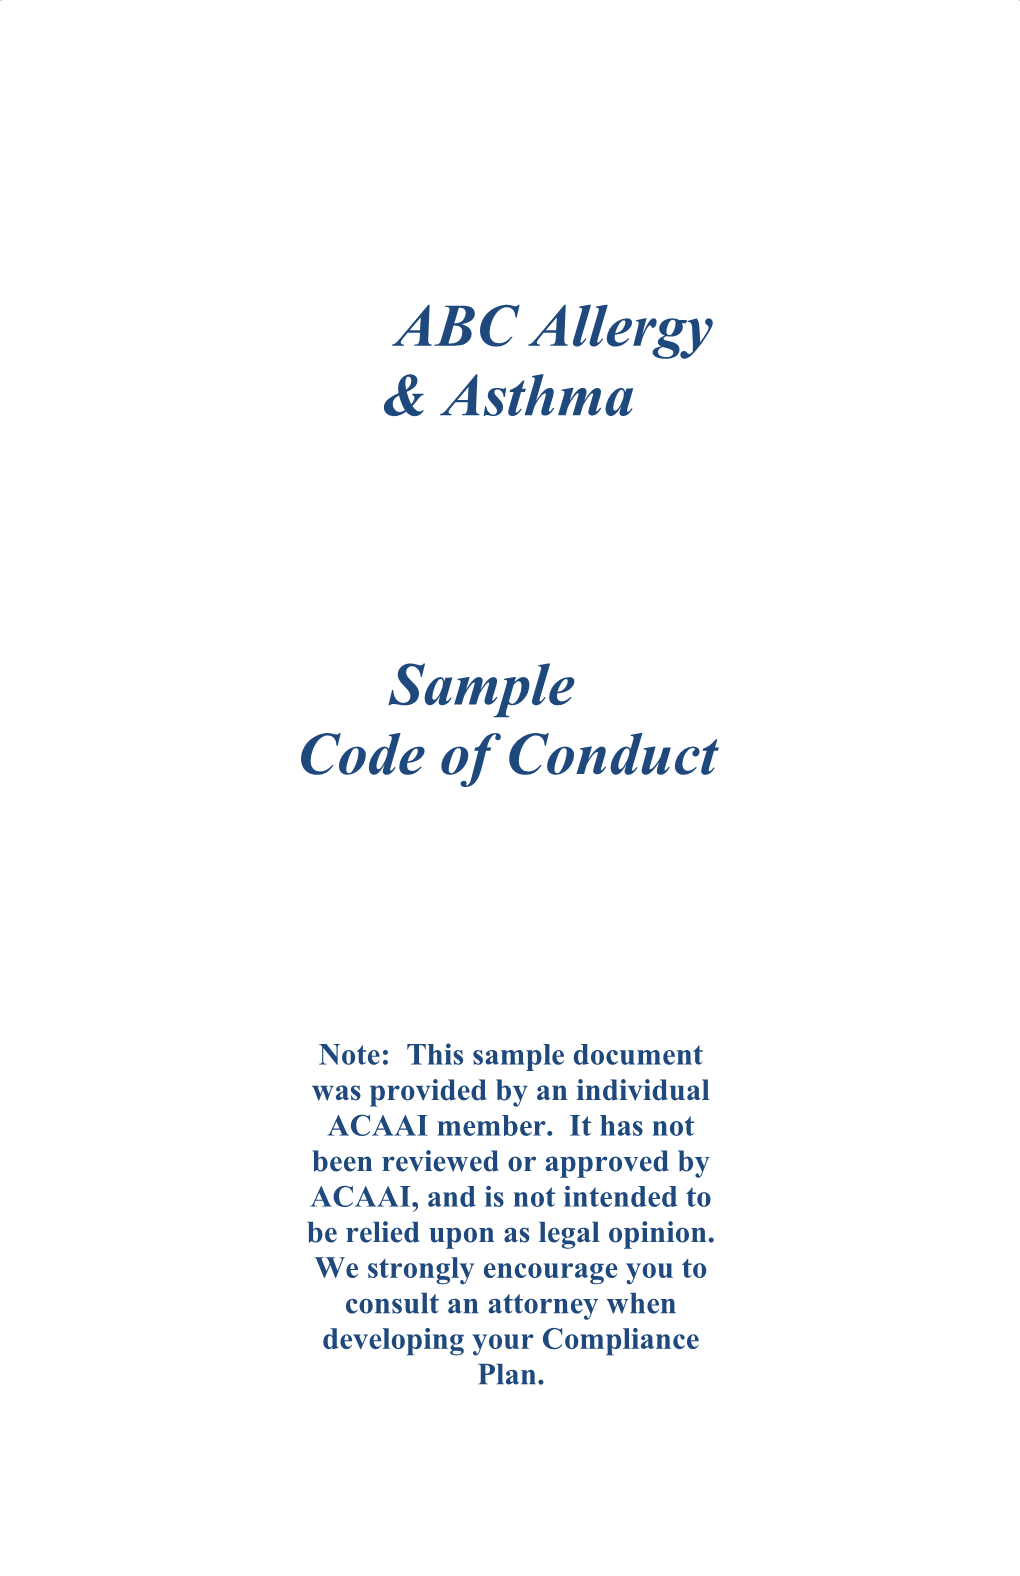 ABC Allergy & Asthma